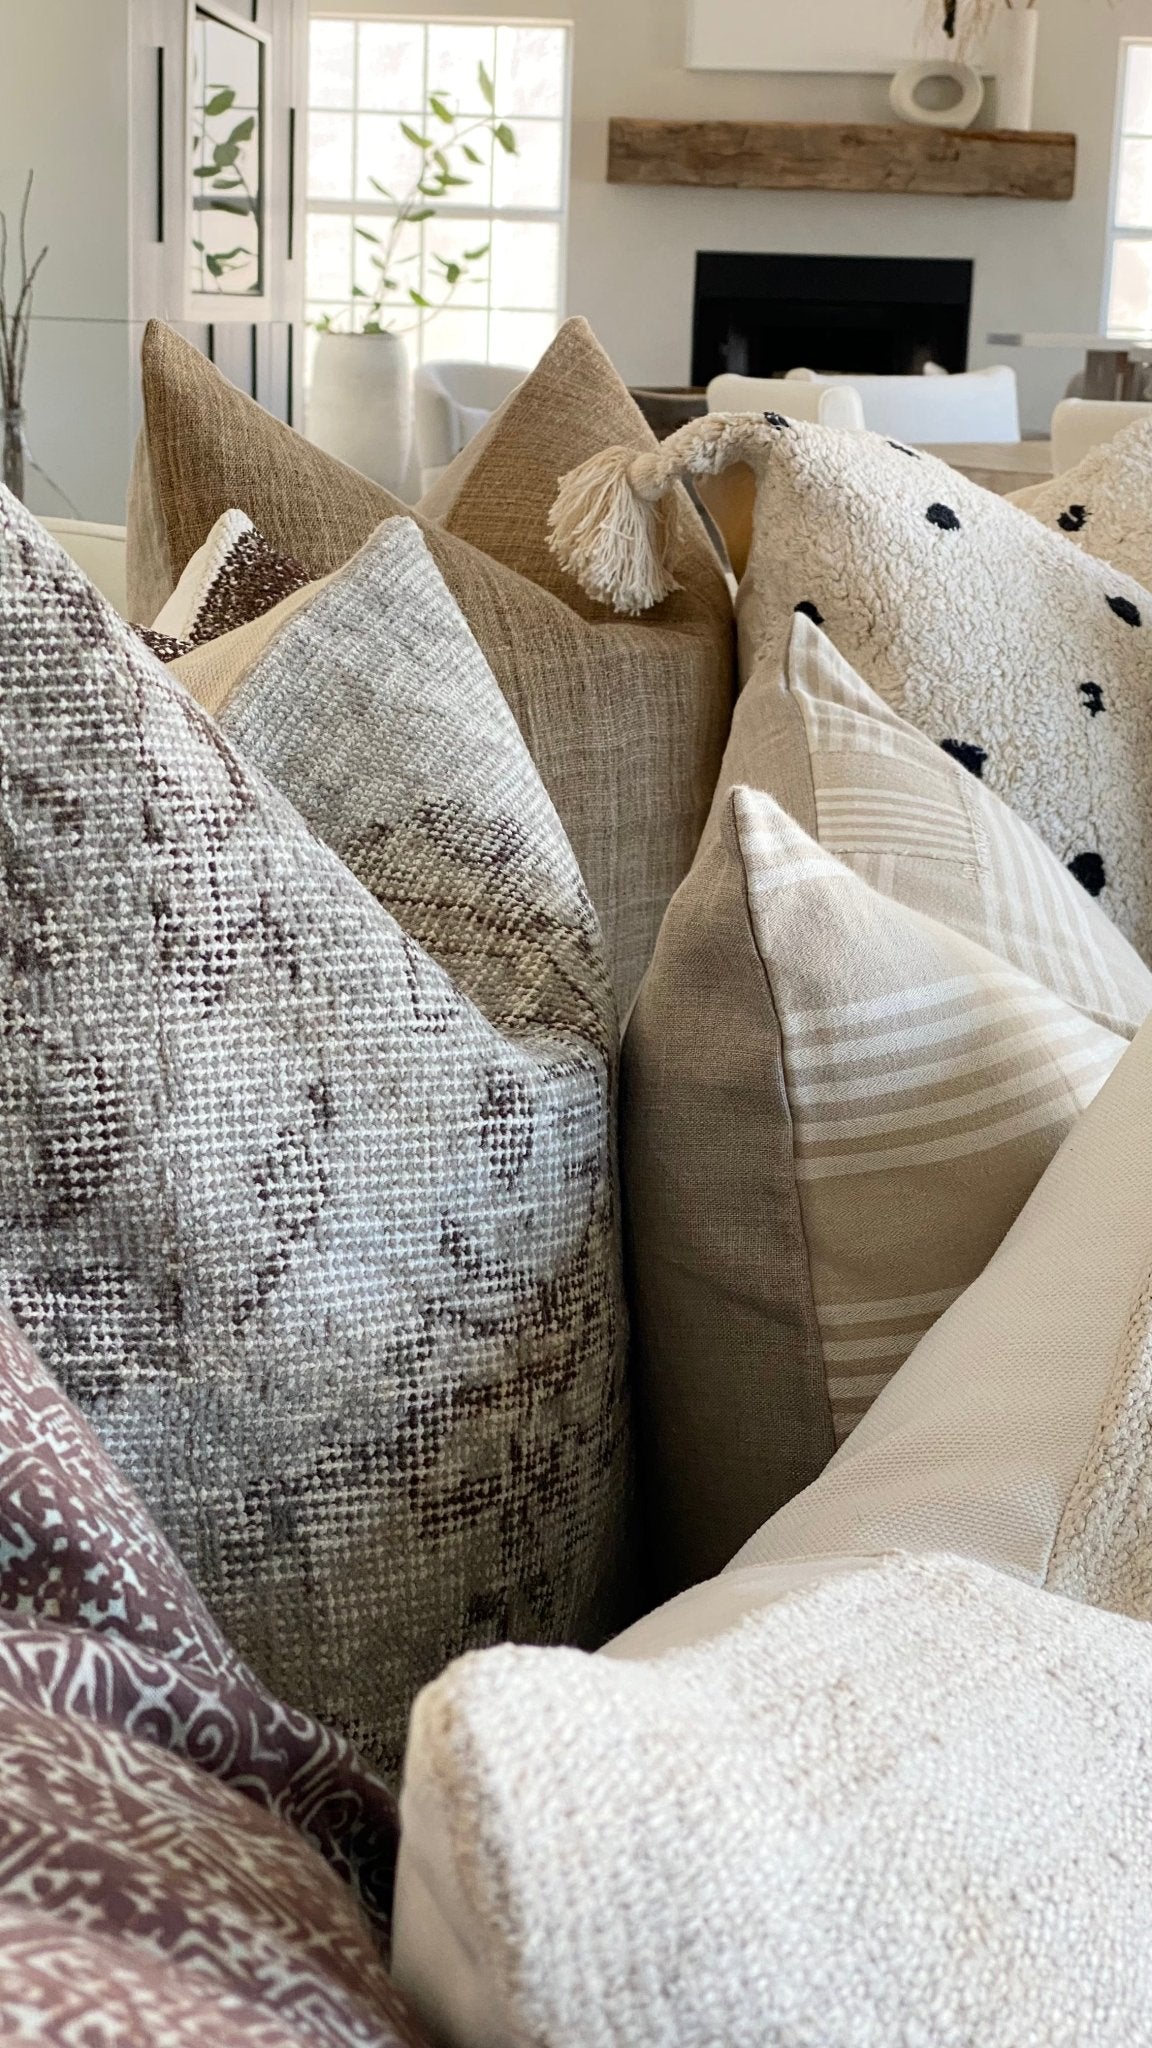 Vintage Fabric Pillows | Textiles - Debra Hall Lifestyle